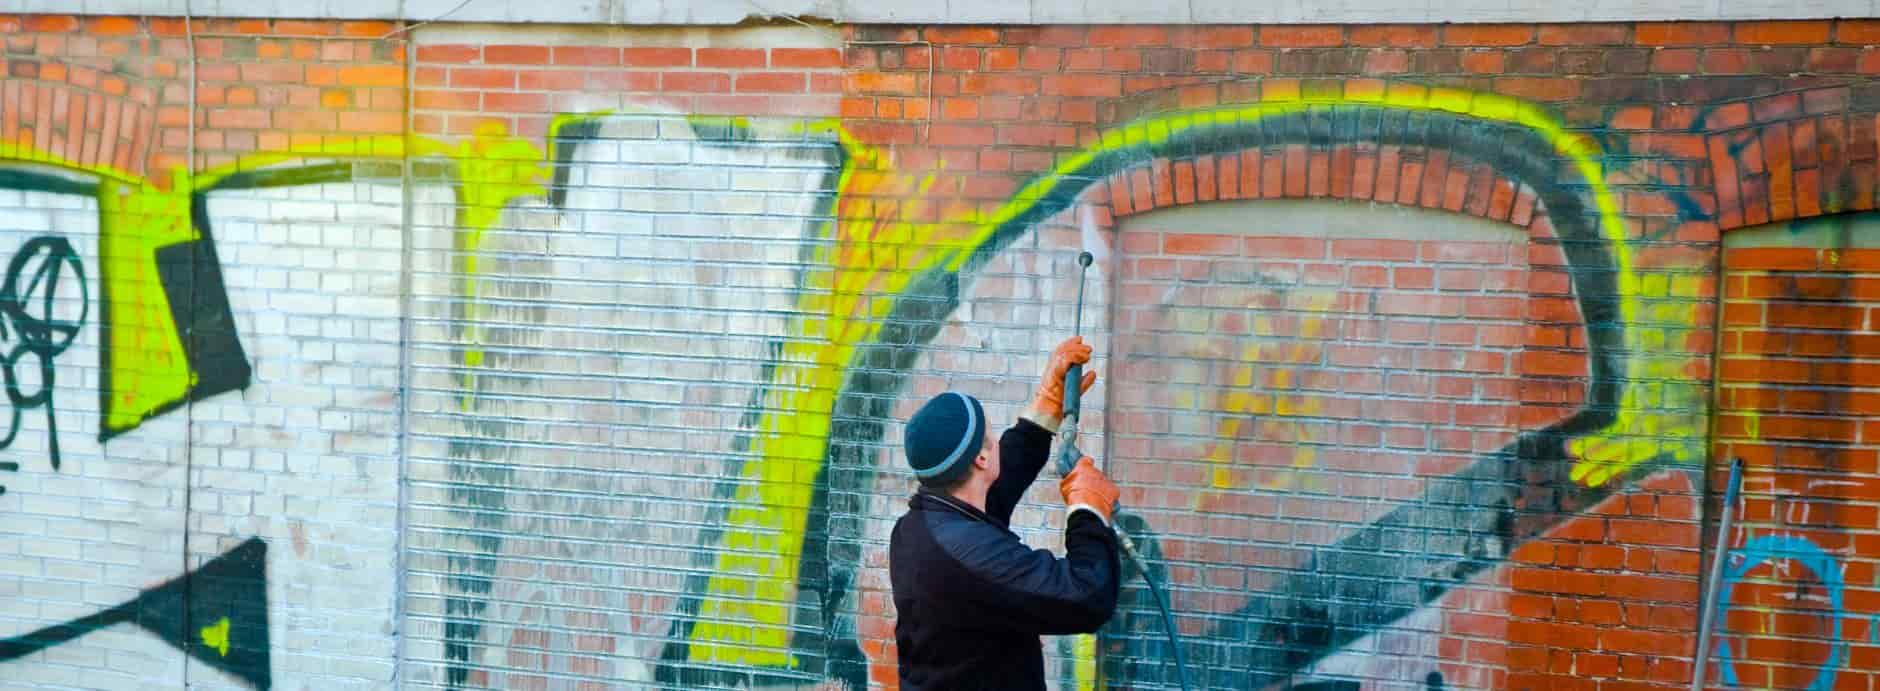 Graffiti Removal in Dinnington